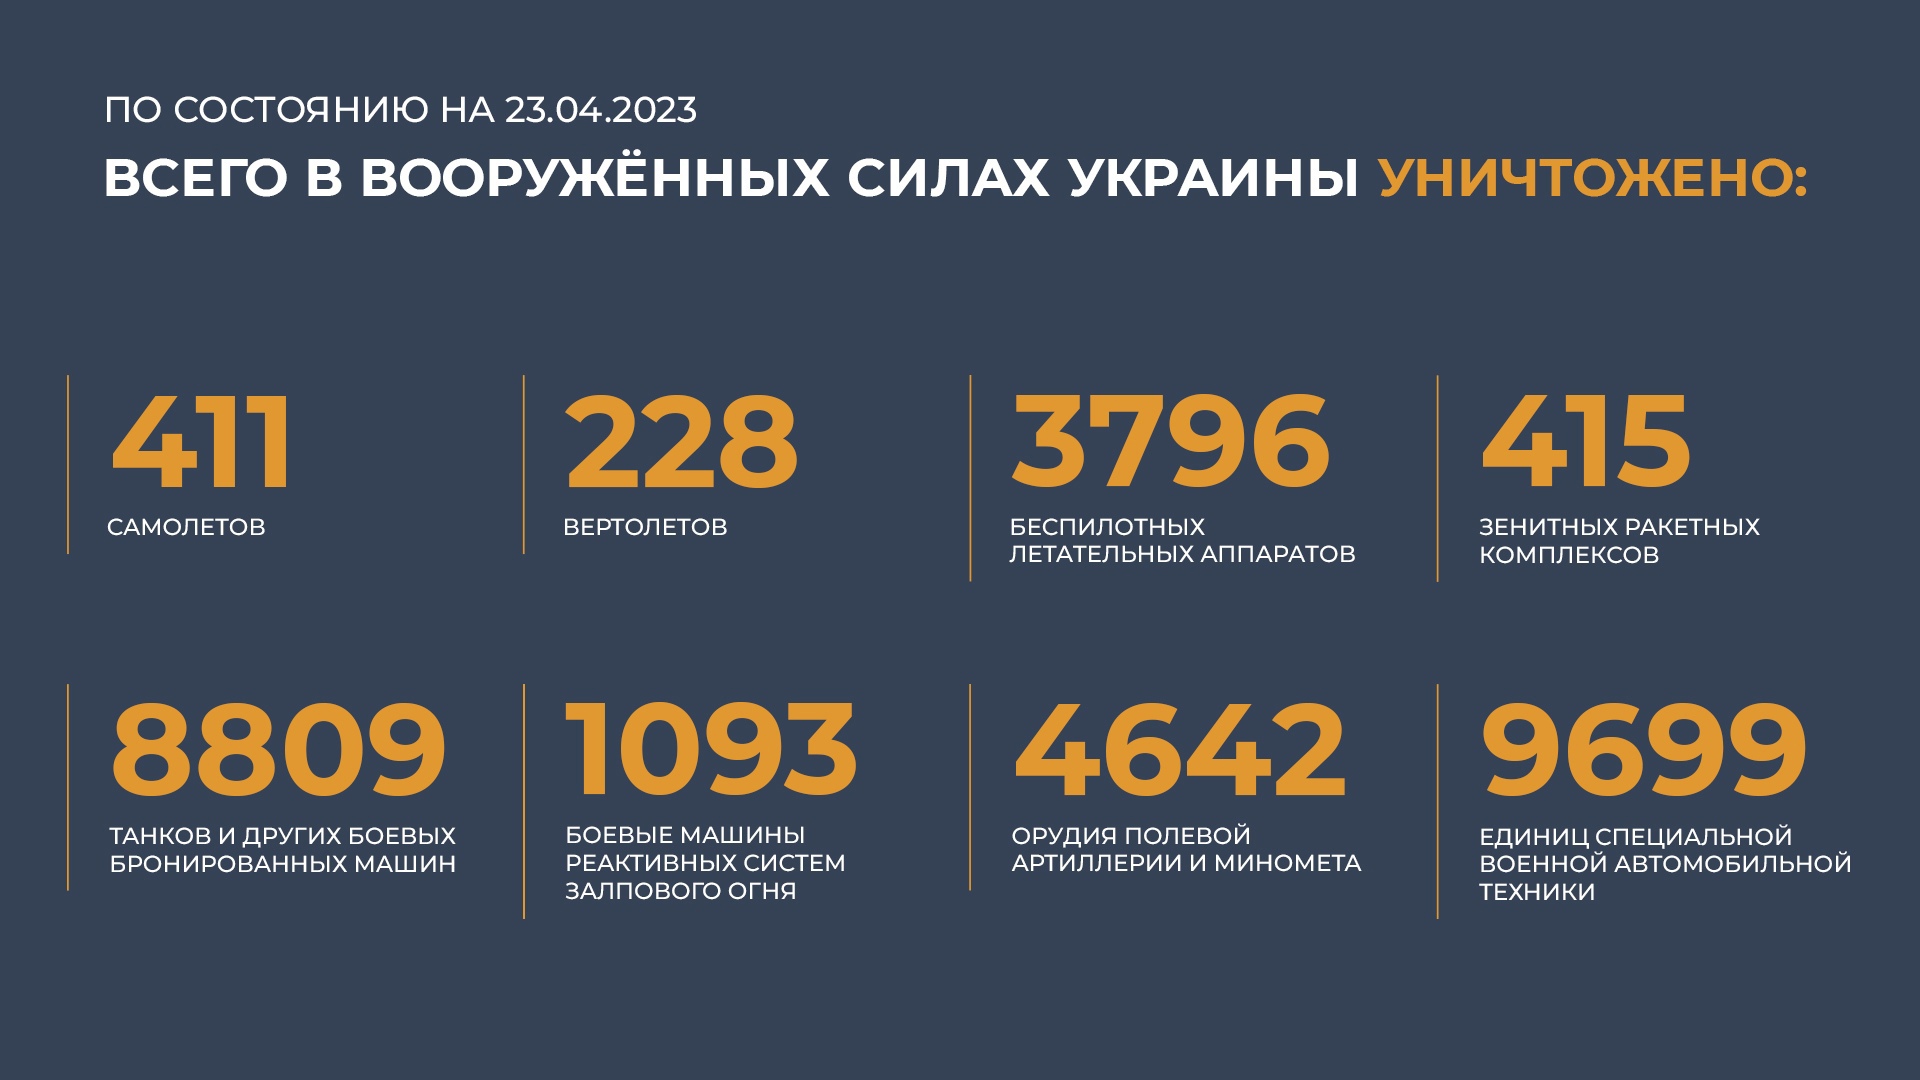 5 13 2023. Потери Украины 2023. Потери России в сво 2023. Сводка потерь ВСУ на сегодня. Потери ВСУ на сегодня 2023 года.